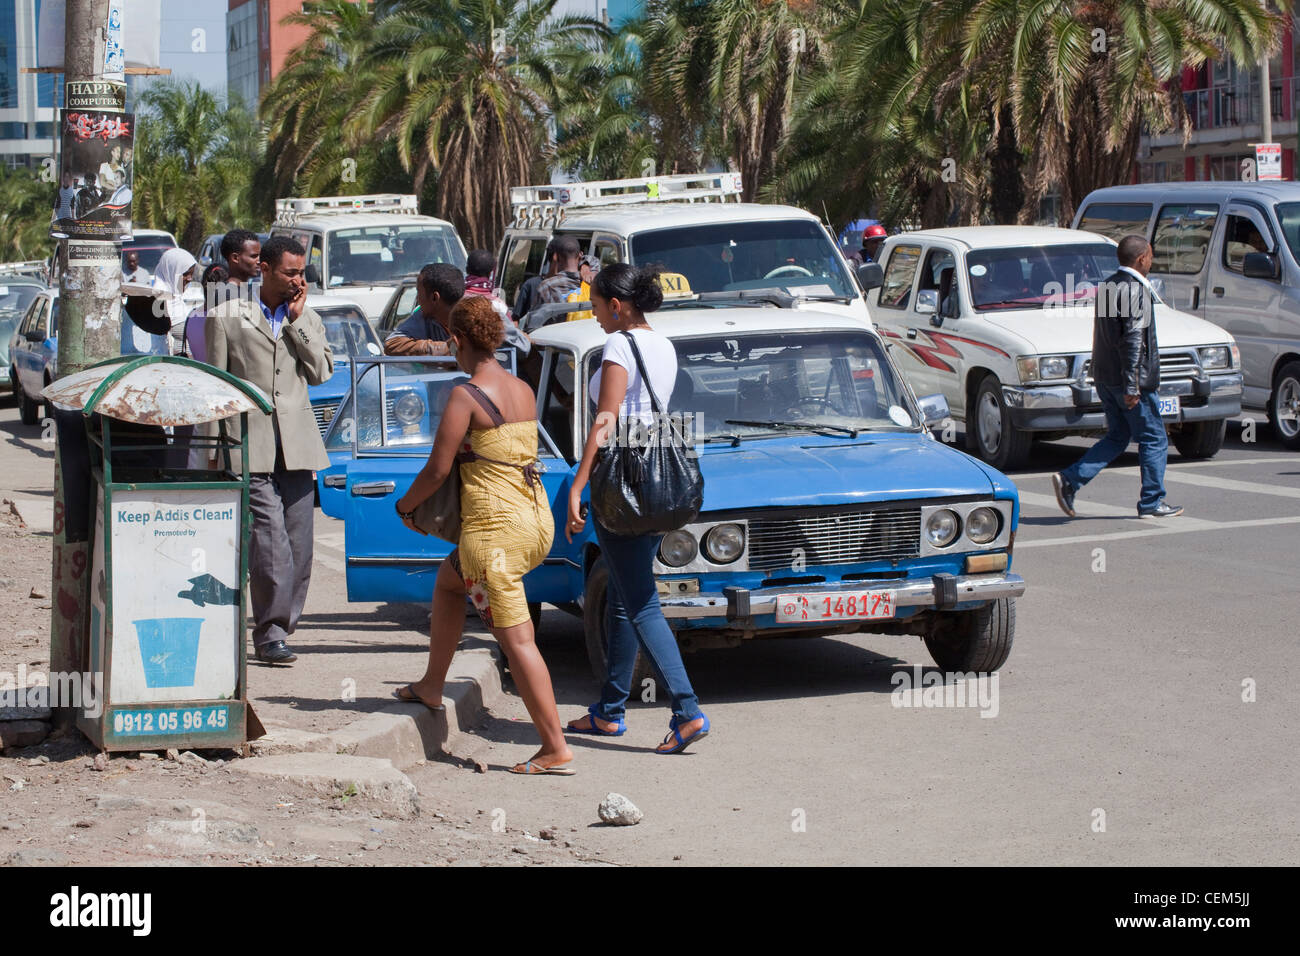 Etiopia ad Addis Abeba. Pedoni e traffico in corrispondenza di un incrocio stradale. Nota raccolta rifiuti bin sul marciapiede, a sinistra. Foto Stock